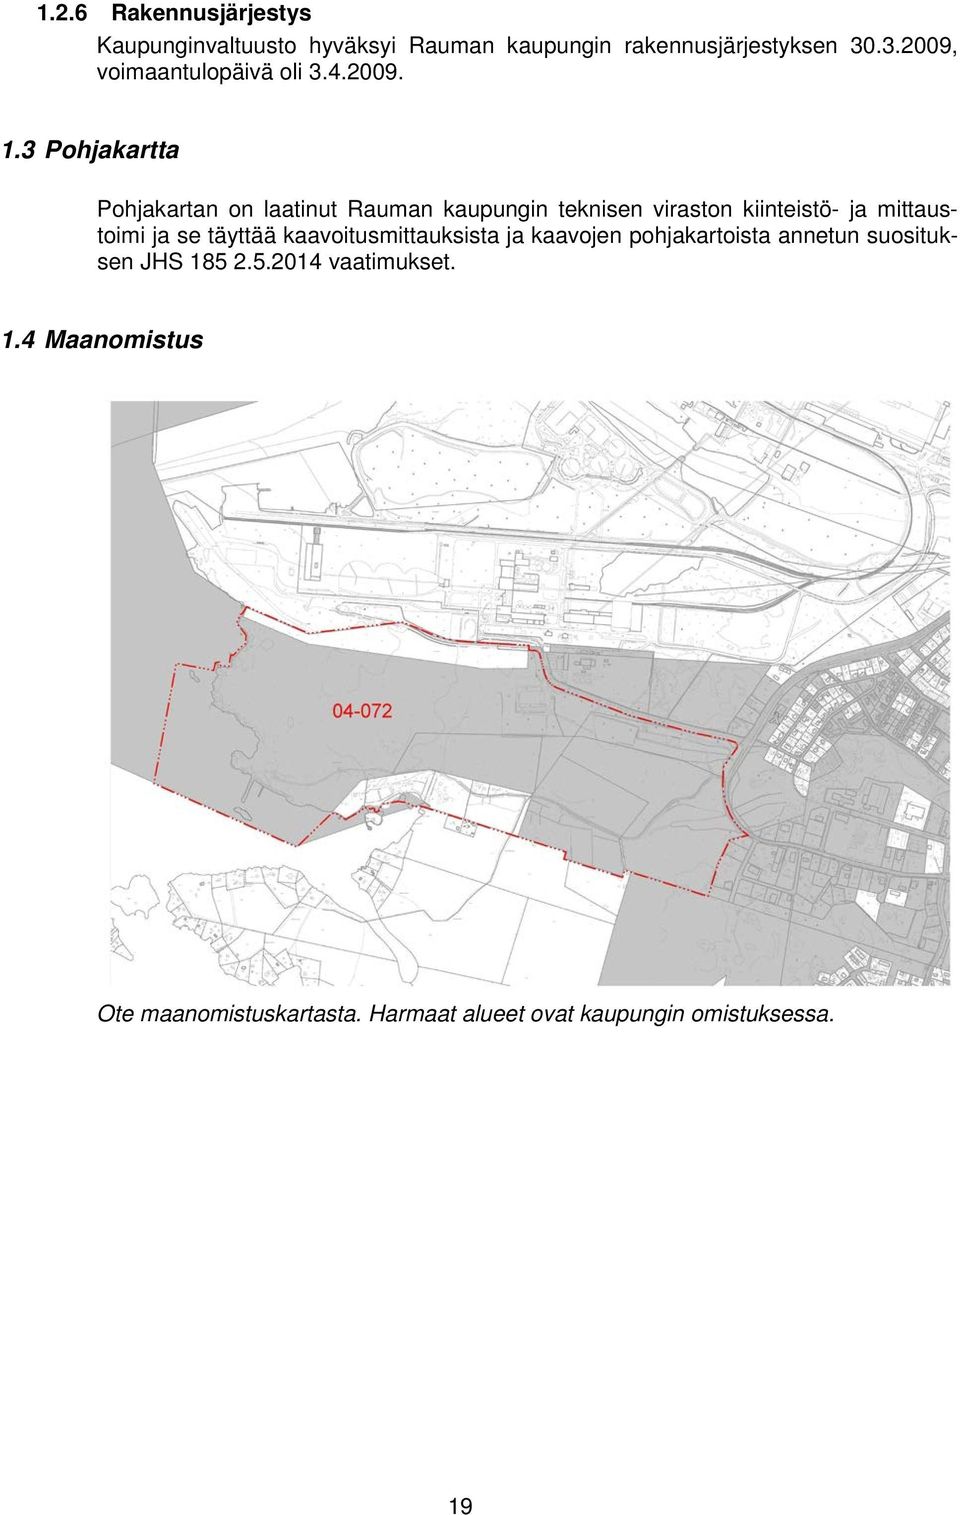 3 Pohjakartta Pohjakartan on laatinut Rauman kaupungin teknisen viraston kiinteistö- ja mittaustoimi ja se